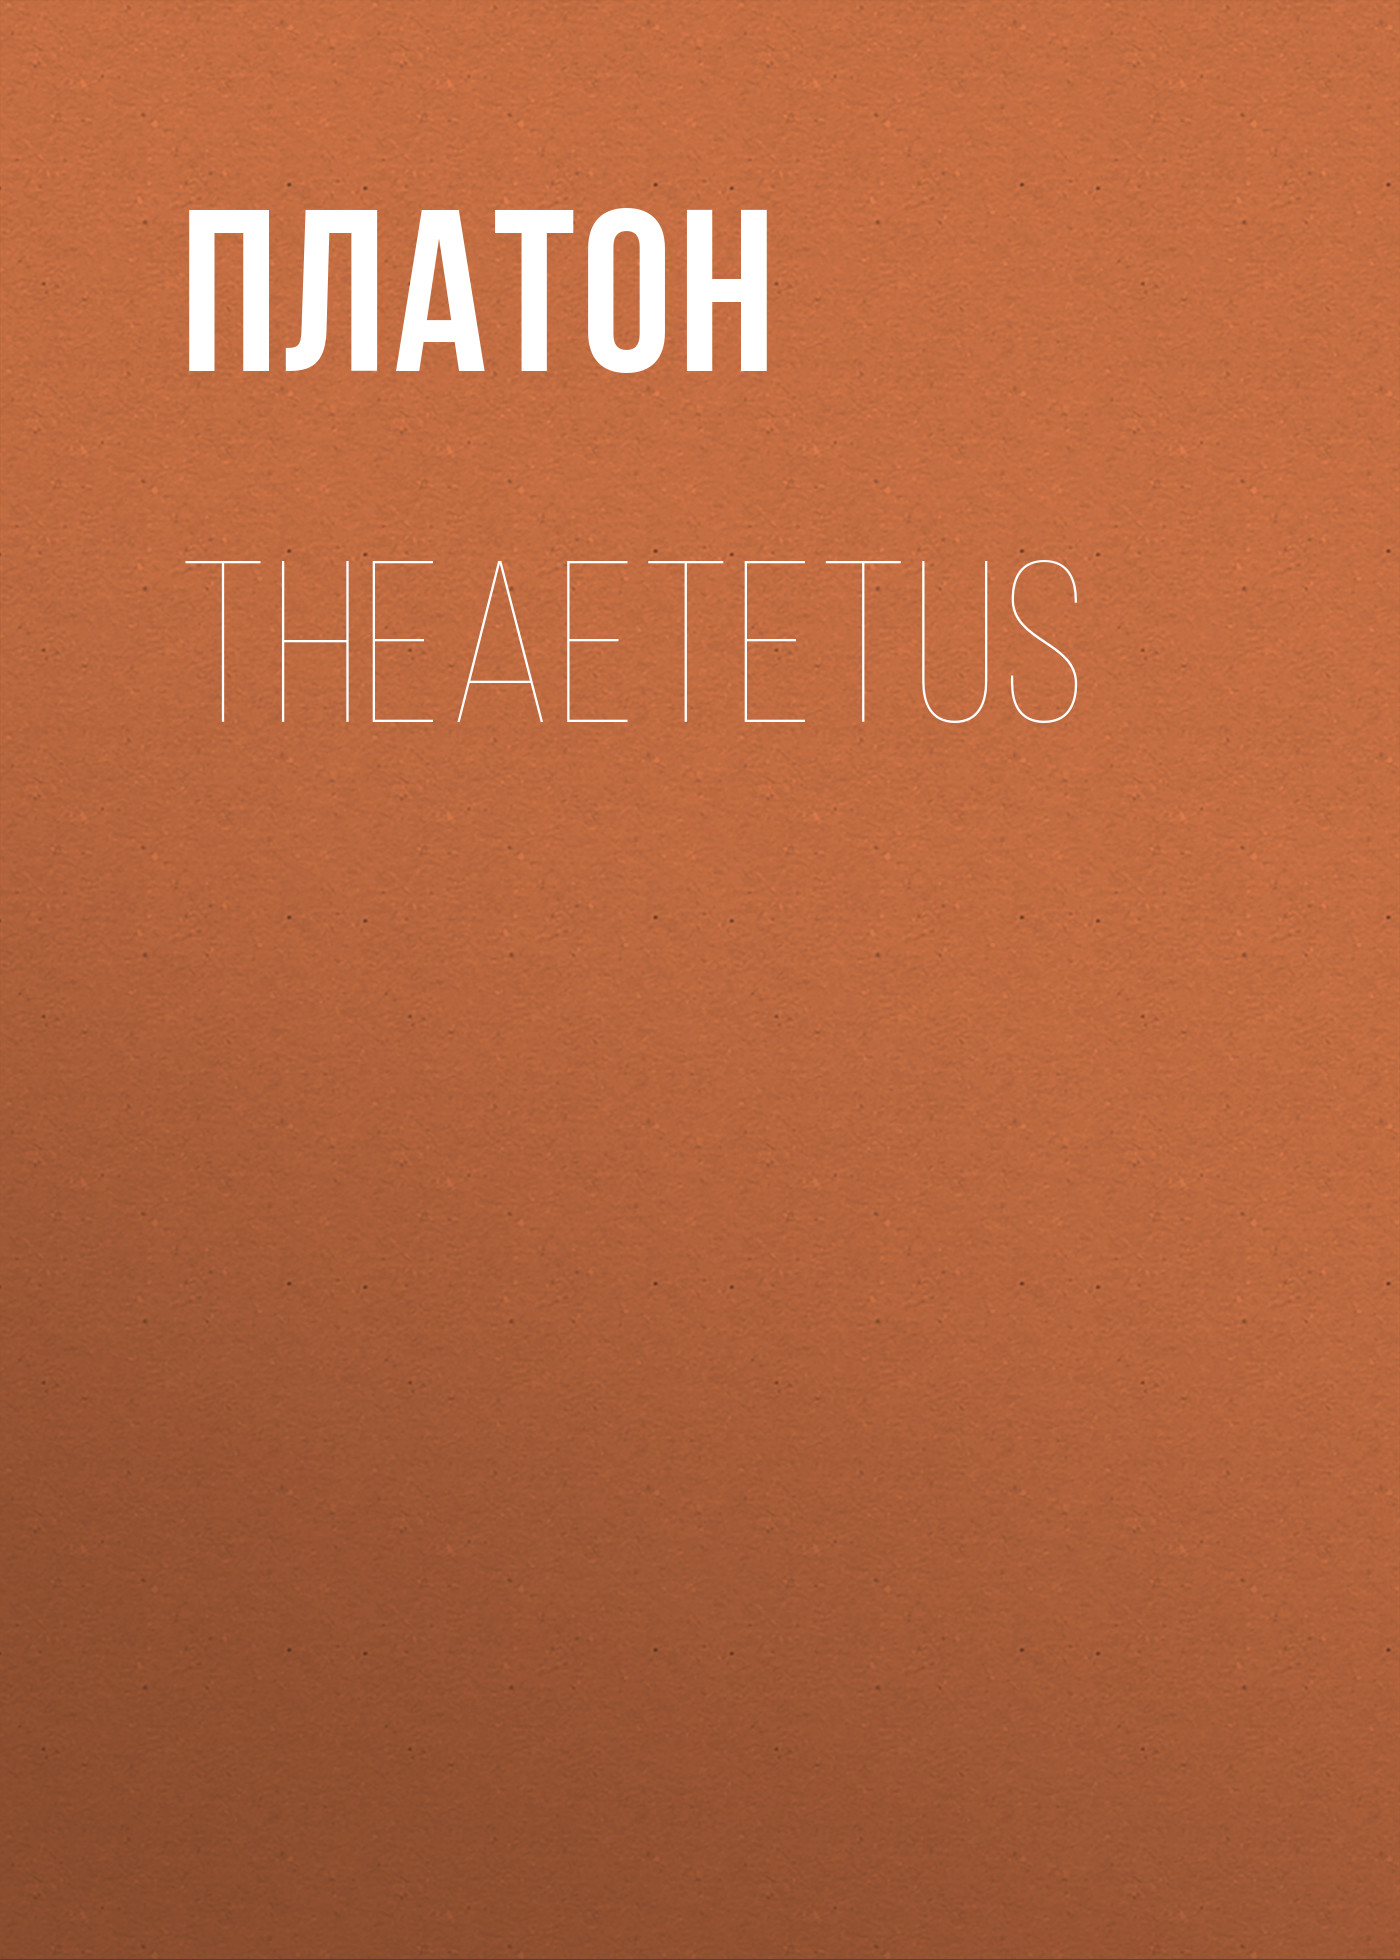 Книга Theaetetus из серии , созданная  Платон, может относится к жанру Философия, Зарубежная старинная литература, Зарубежная классика. Стоимость электронной книги Theaetetus с идентификатором 25293315 составляет 0 руб.